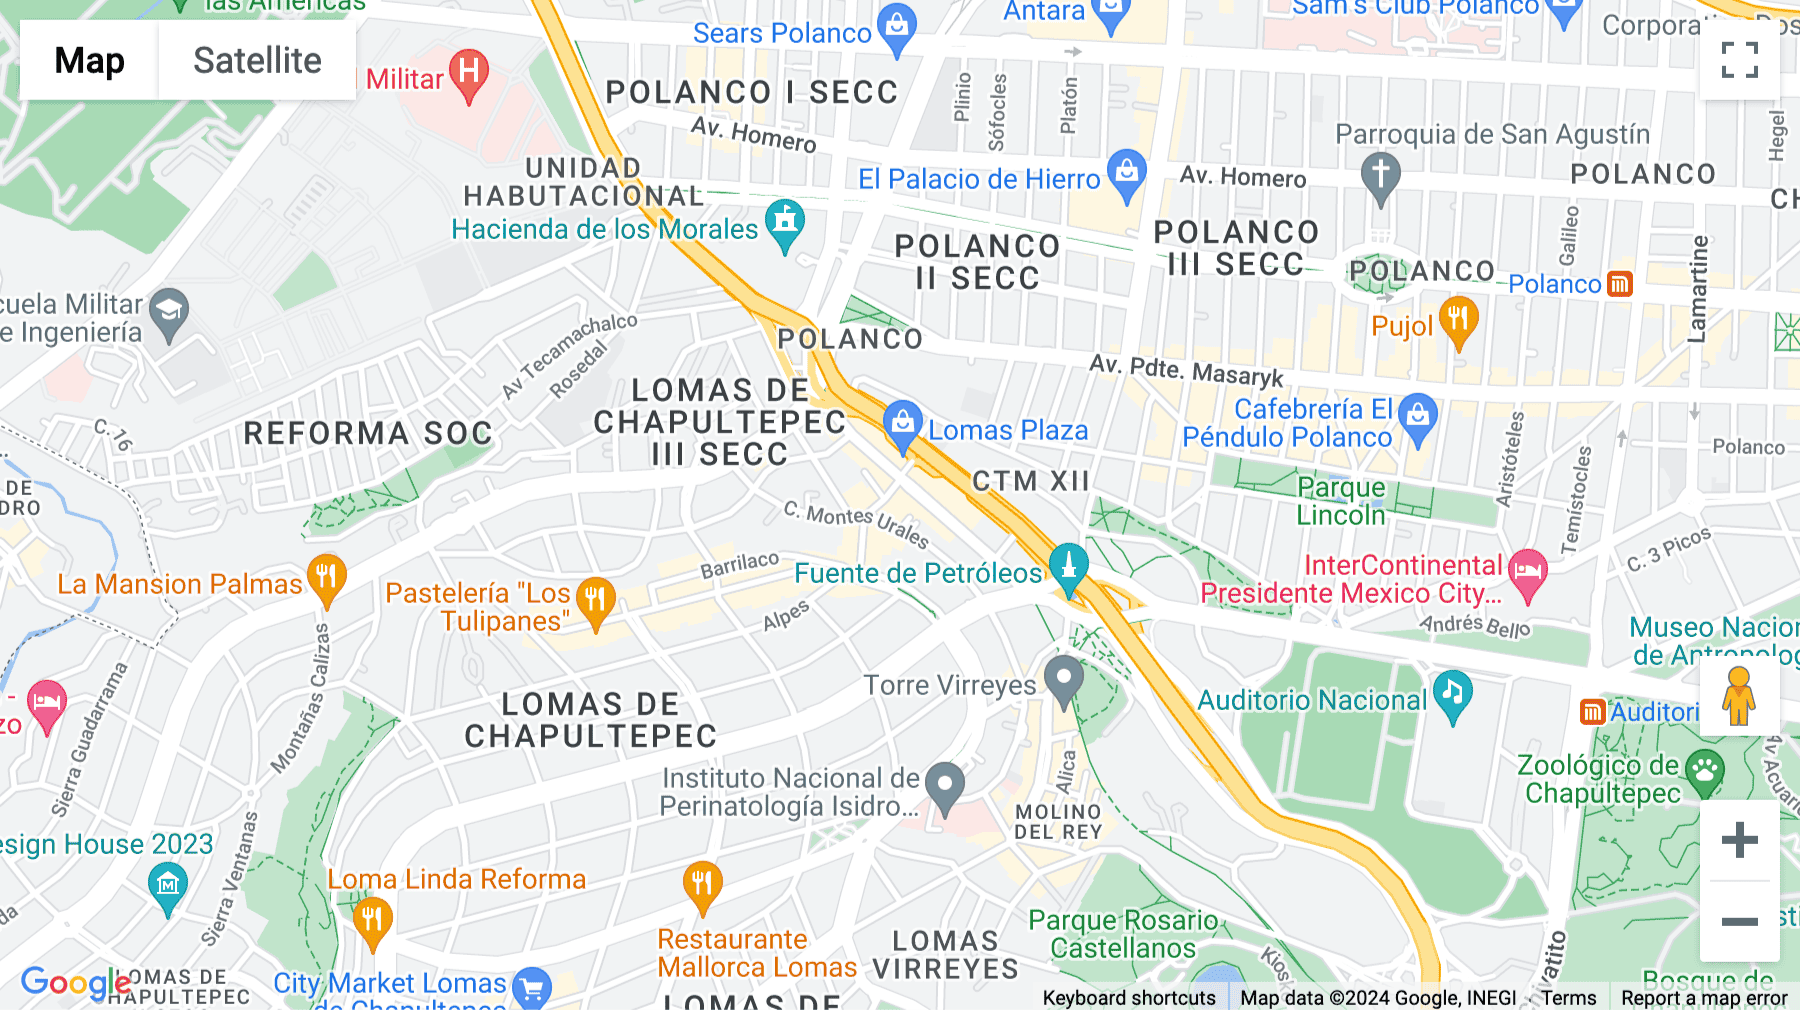 Click for interative map of Montes Urales 424, Virreyes Lomas de Chapultepec V Seccio, Mexico City